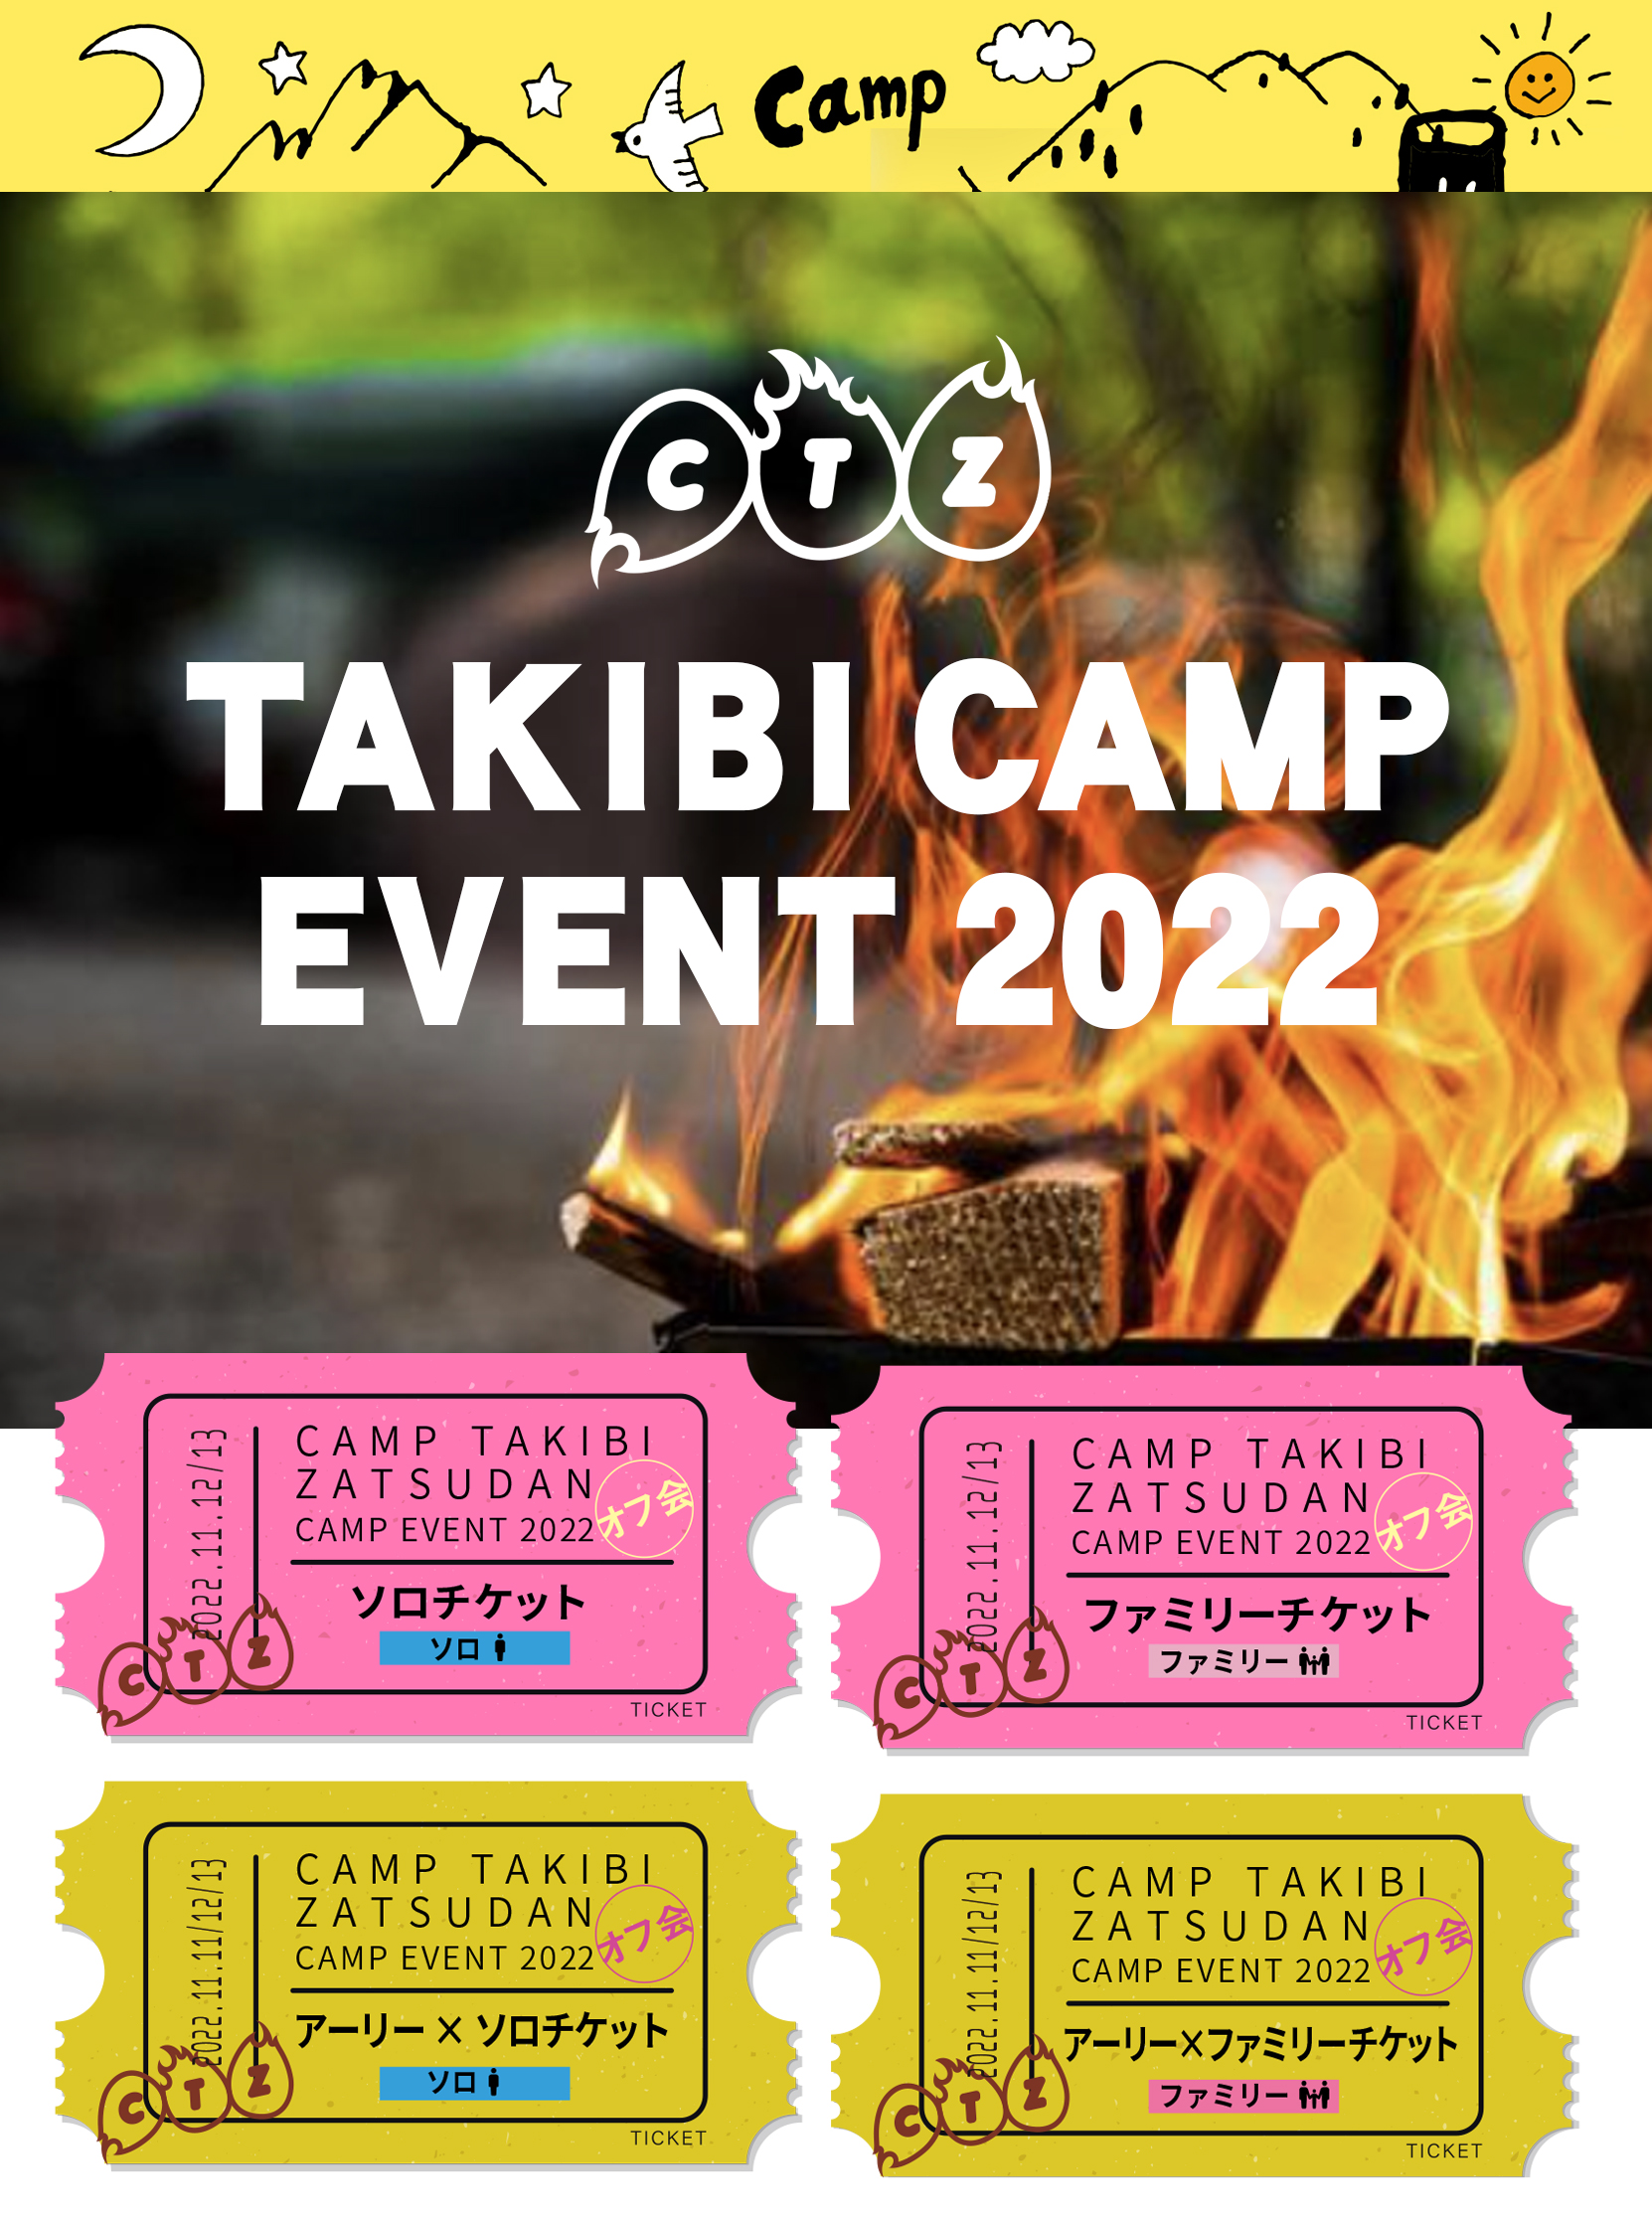 CAMP Takiki Zatsudan